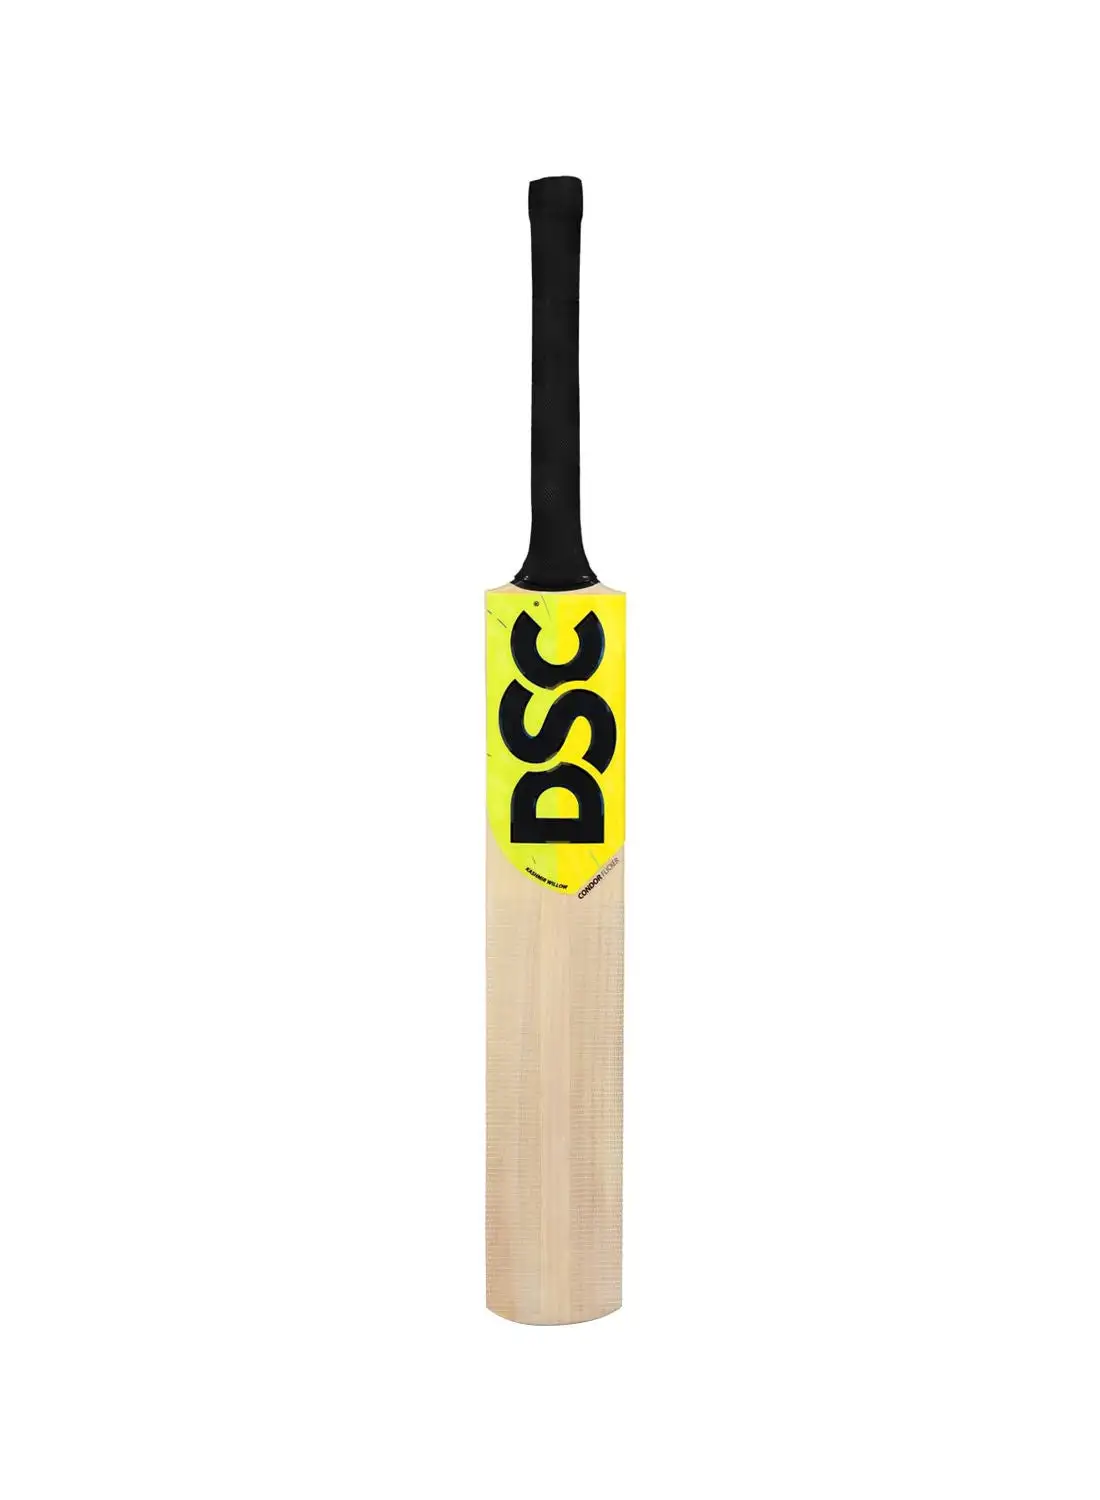 DSC Condor Flicker Kashmir Willow Cricket Bat الحجم 4